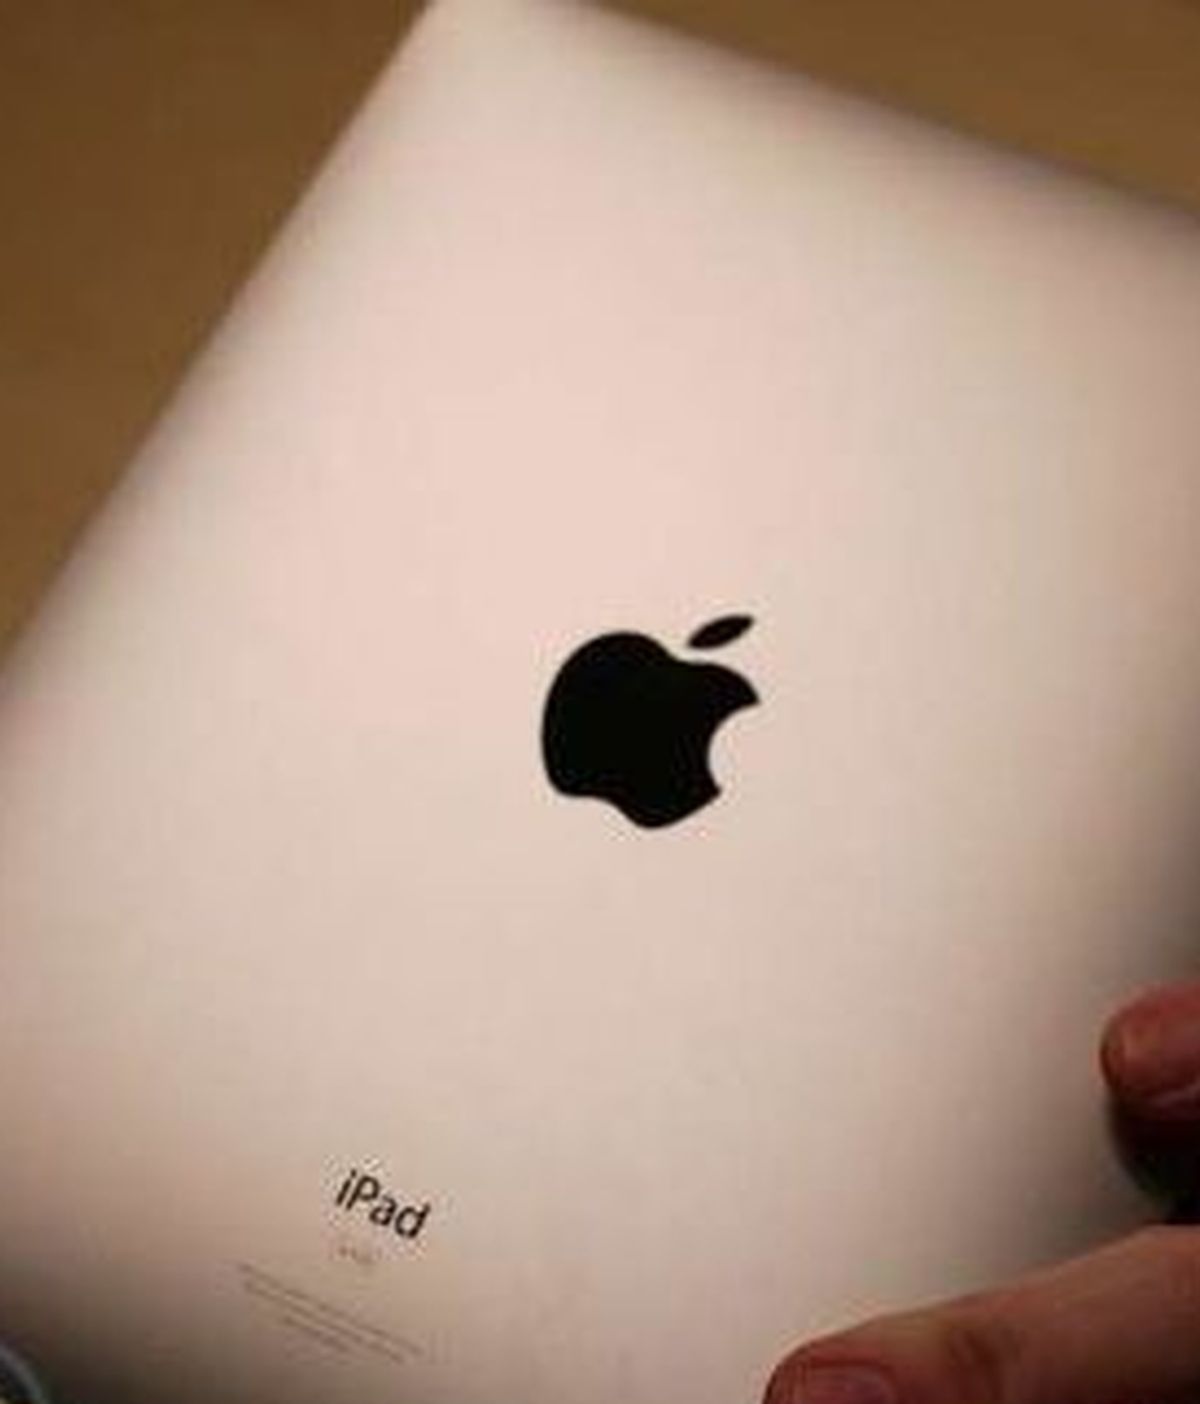 Ashley McDowell compró un iPad a dos hombres por un precio muy inferior que en las tiendas cuando llegó a casa descubrió que el tablet era de madera.